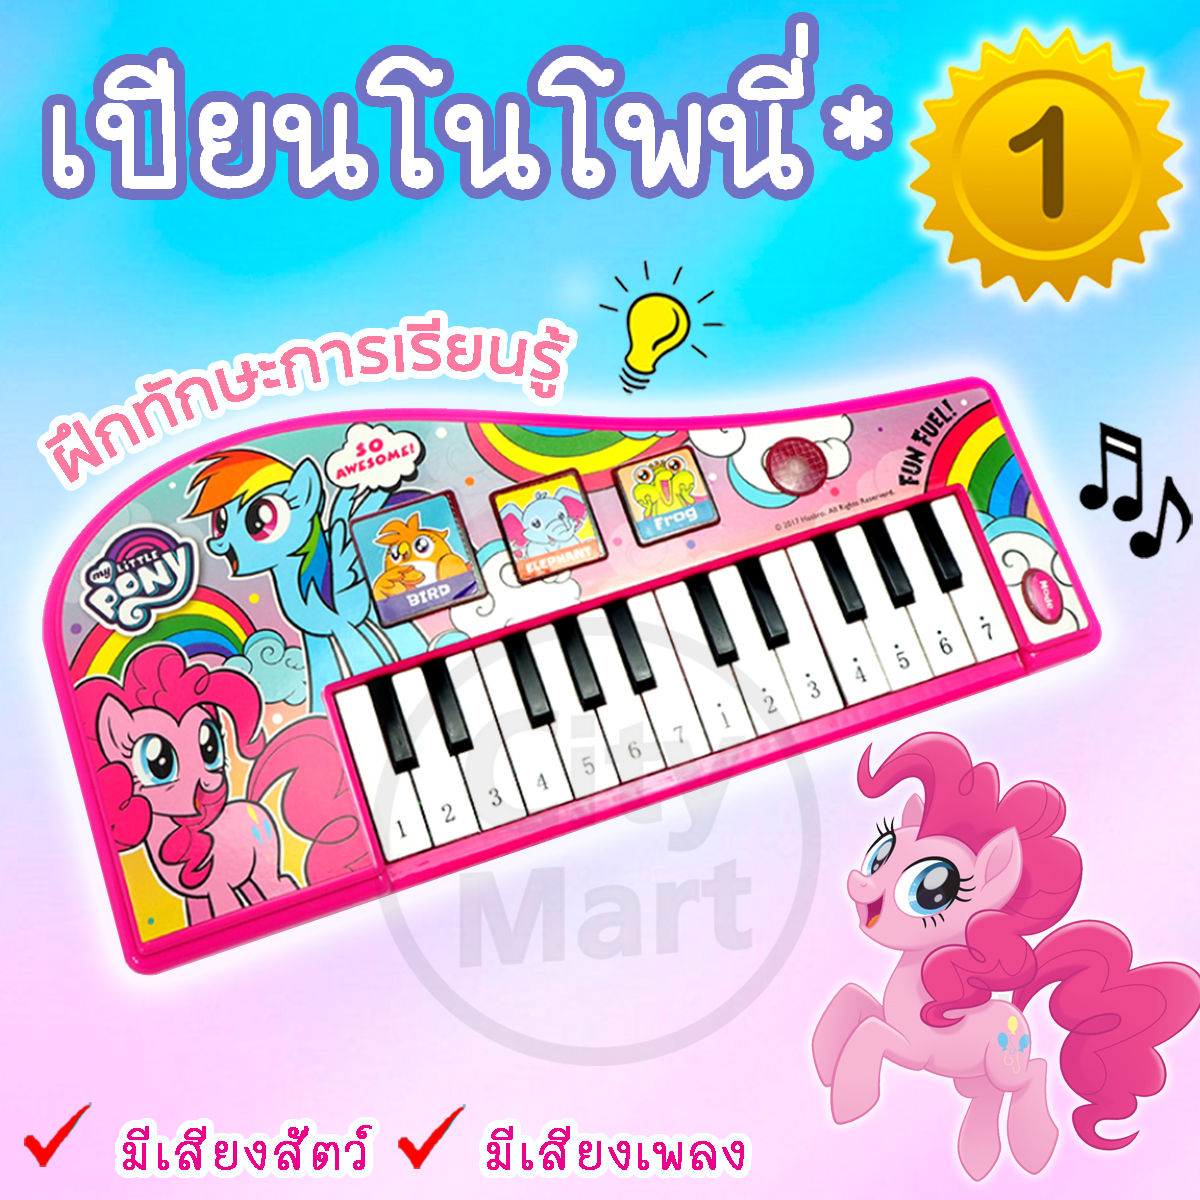 ของเล่นเด็ก เปียนโน โพนี่ Pony ขายดีอันดับ 1 คีบอร์ดของเล่น Piano Keyboard ของเล่นเครื่องดนตรี เสริมสร้างพัฒนาการเด็ก ของเล่นเครื่องดนตรี ขนาด : 32x15.5x4.5 ซม. เครื่องเล่นอิเลคโทนไฟฟ้า สำหรับลูกน้อย เป็นของขวัญ เหมาะสำหรับเด็ก 3 ขวบขึ้นไป